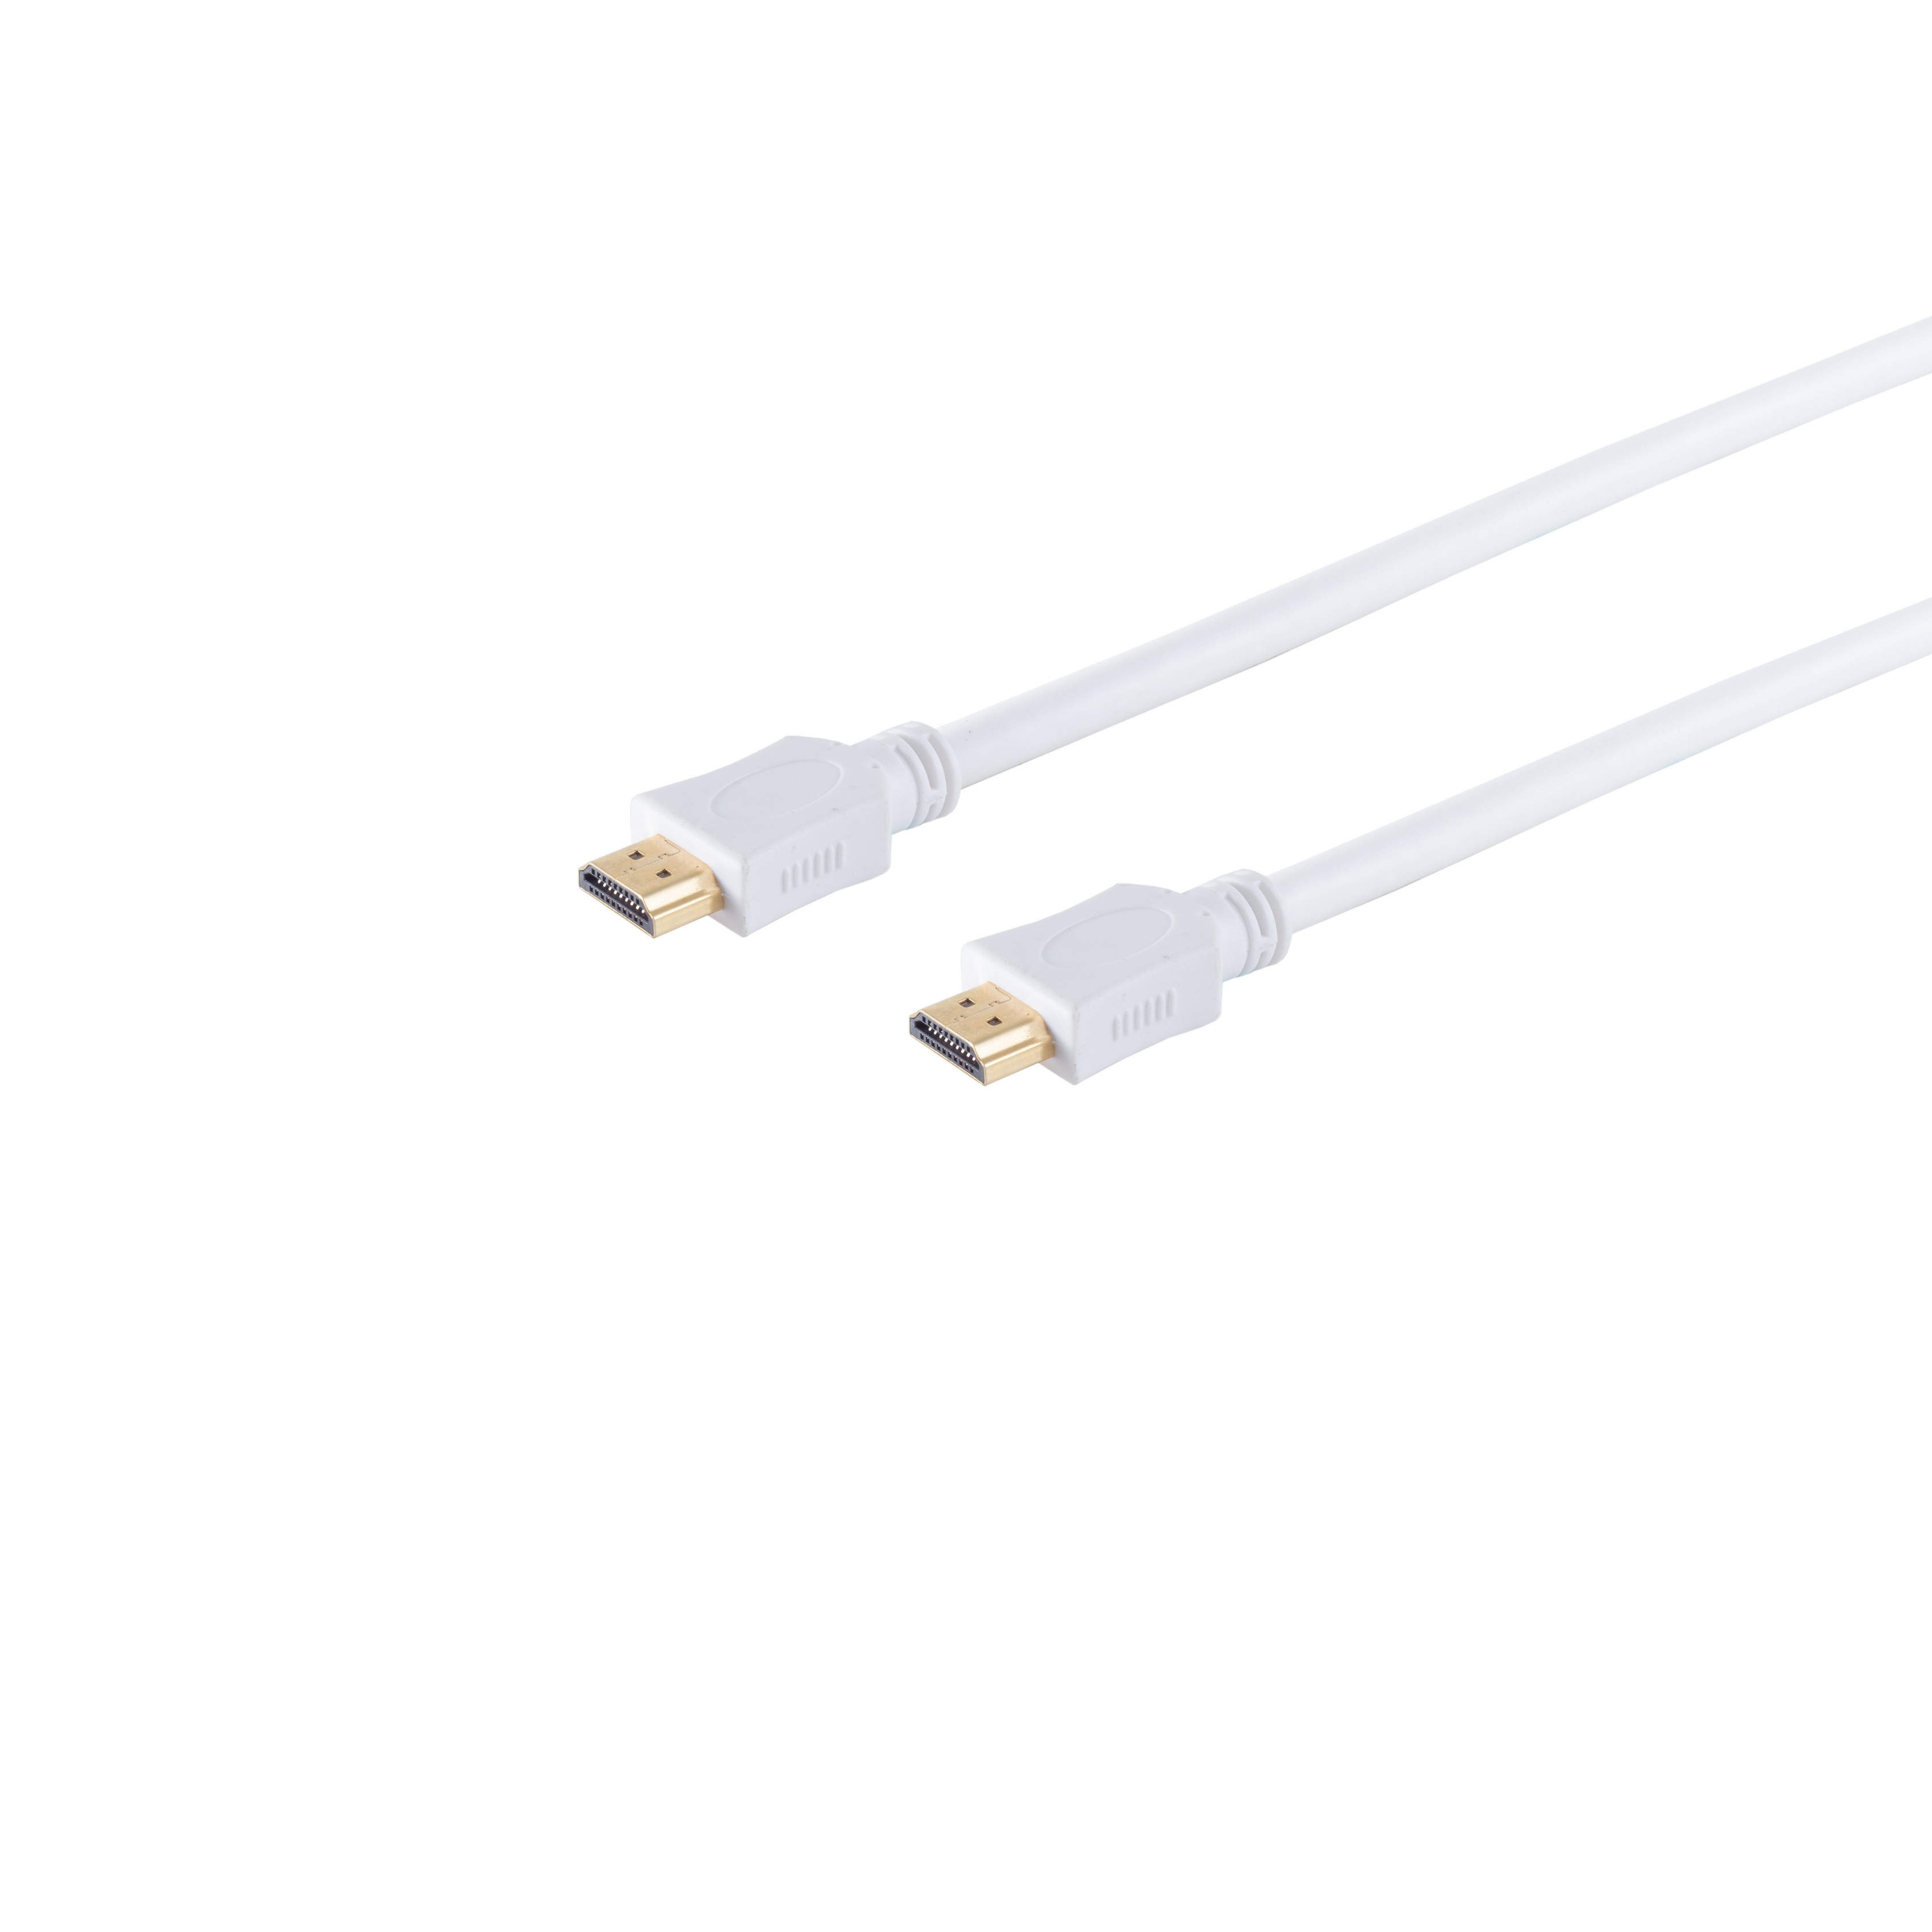 Kabel CONNECTIVITY MAXIMUM A-Stecker HDMI HEAC verg. weiß HDMI S/CONN 3m A-Stecker/HDMI